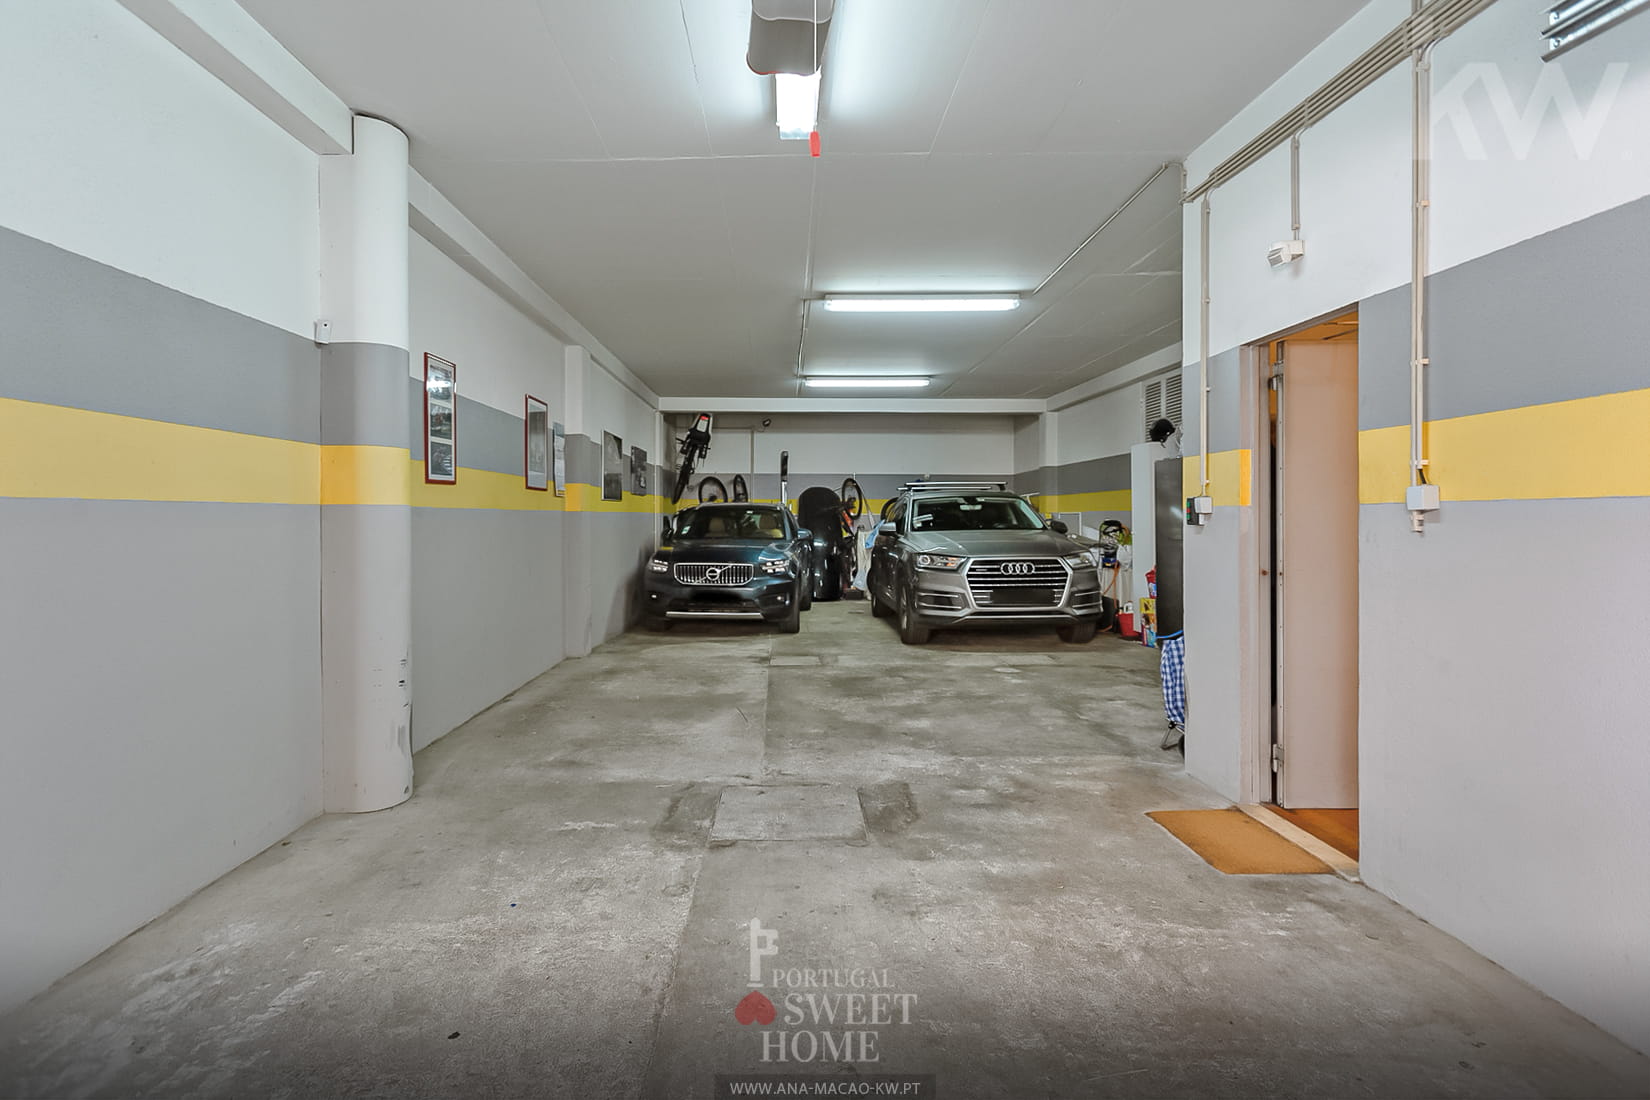 Garage spacieux (82,8 m2) à l'étage 0 pour 4 voitures